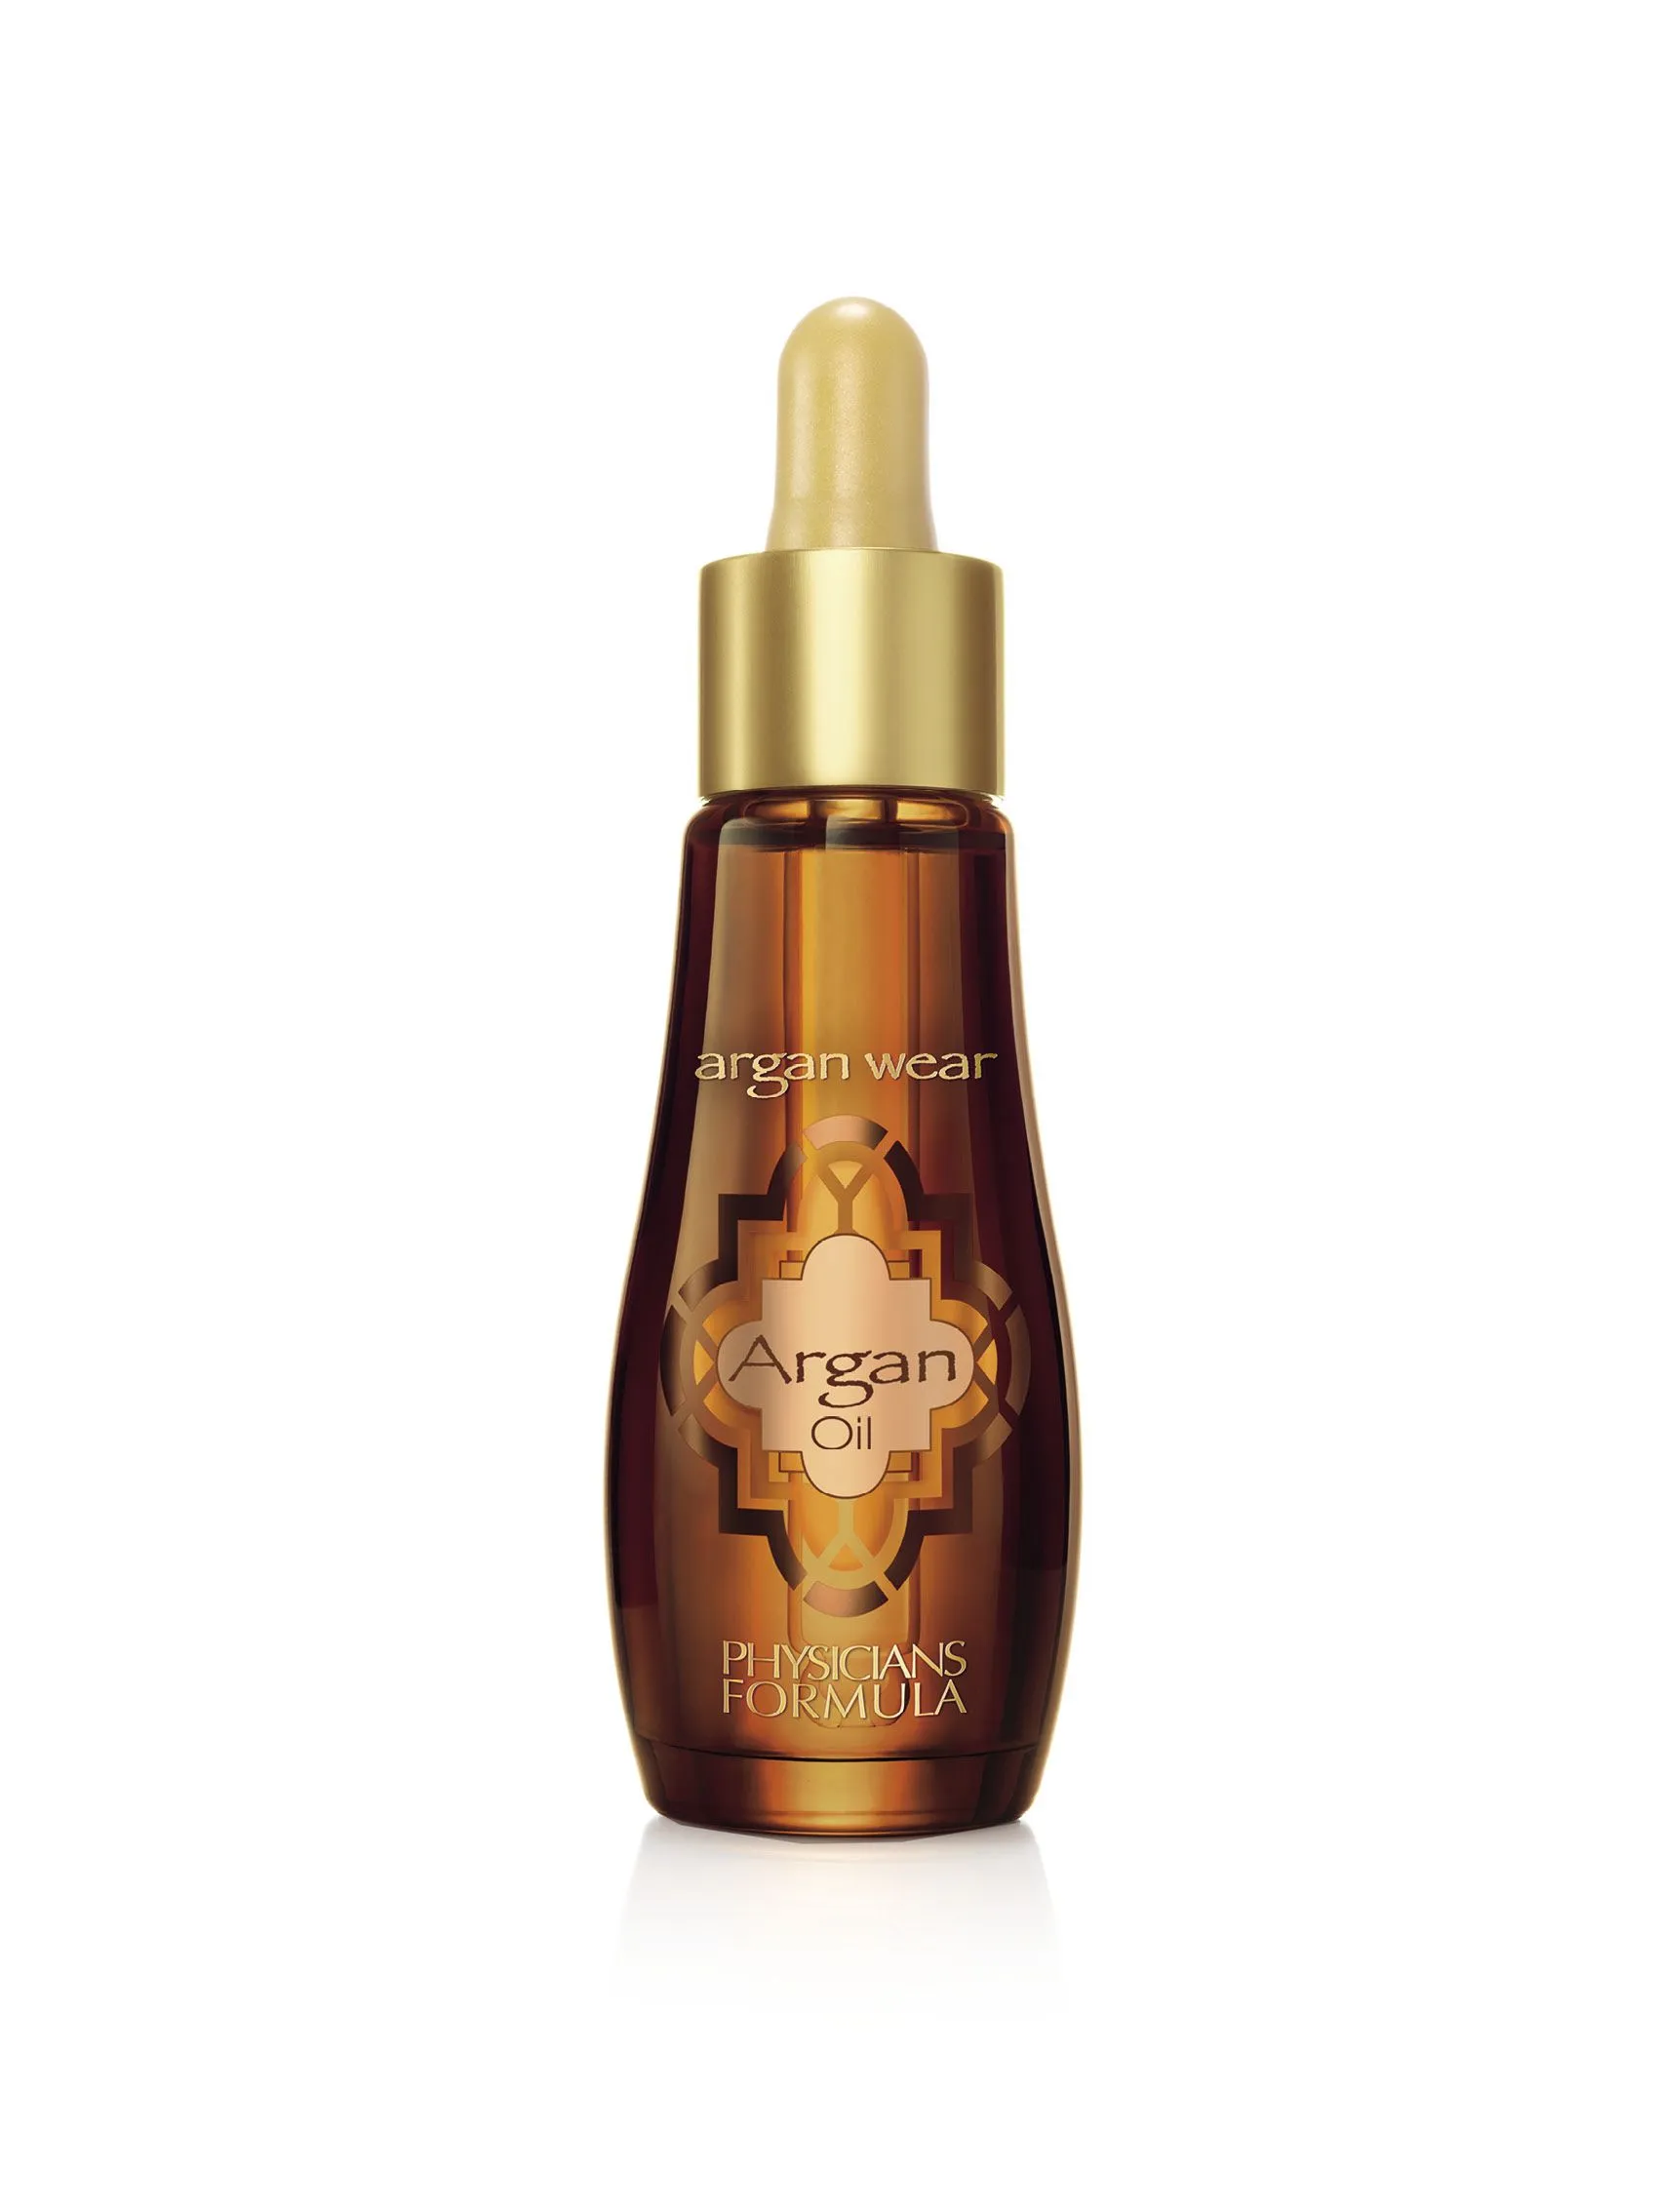 Physicians Formula Argan Wear Ultra-vyživující arganový olej 30 ml